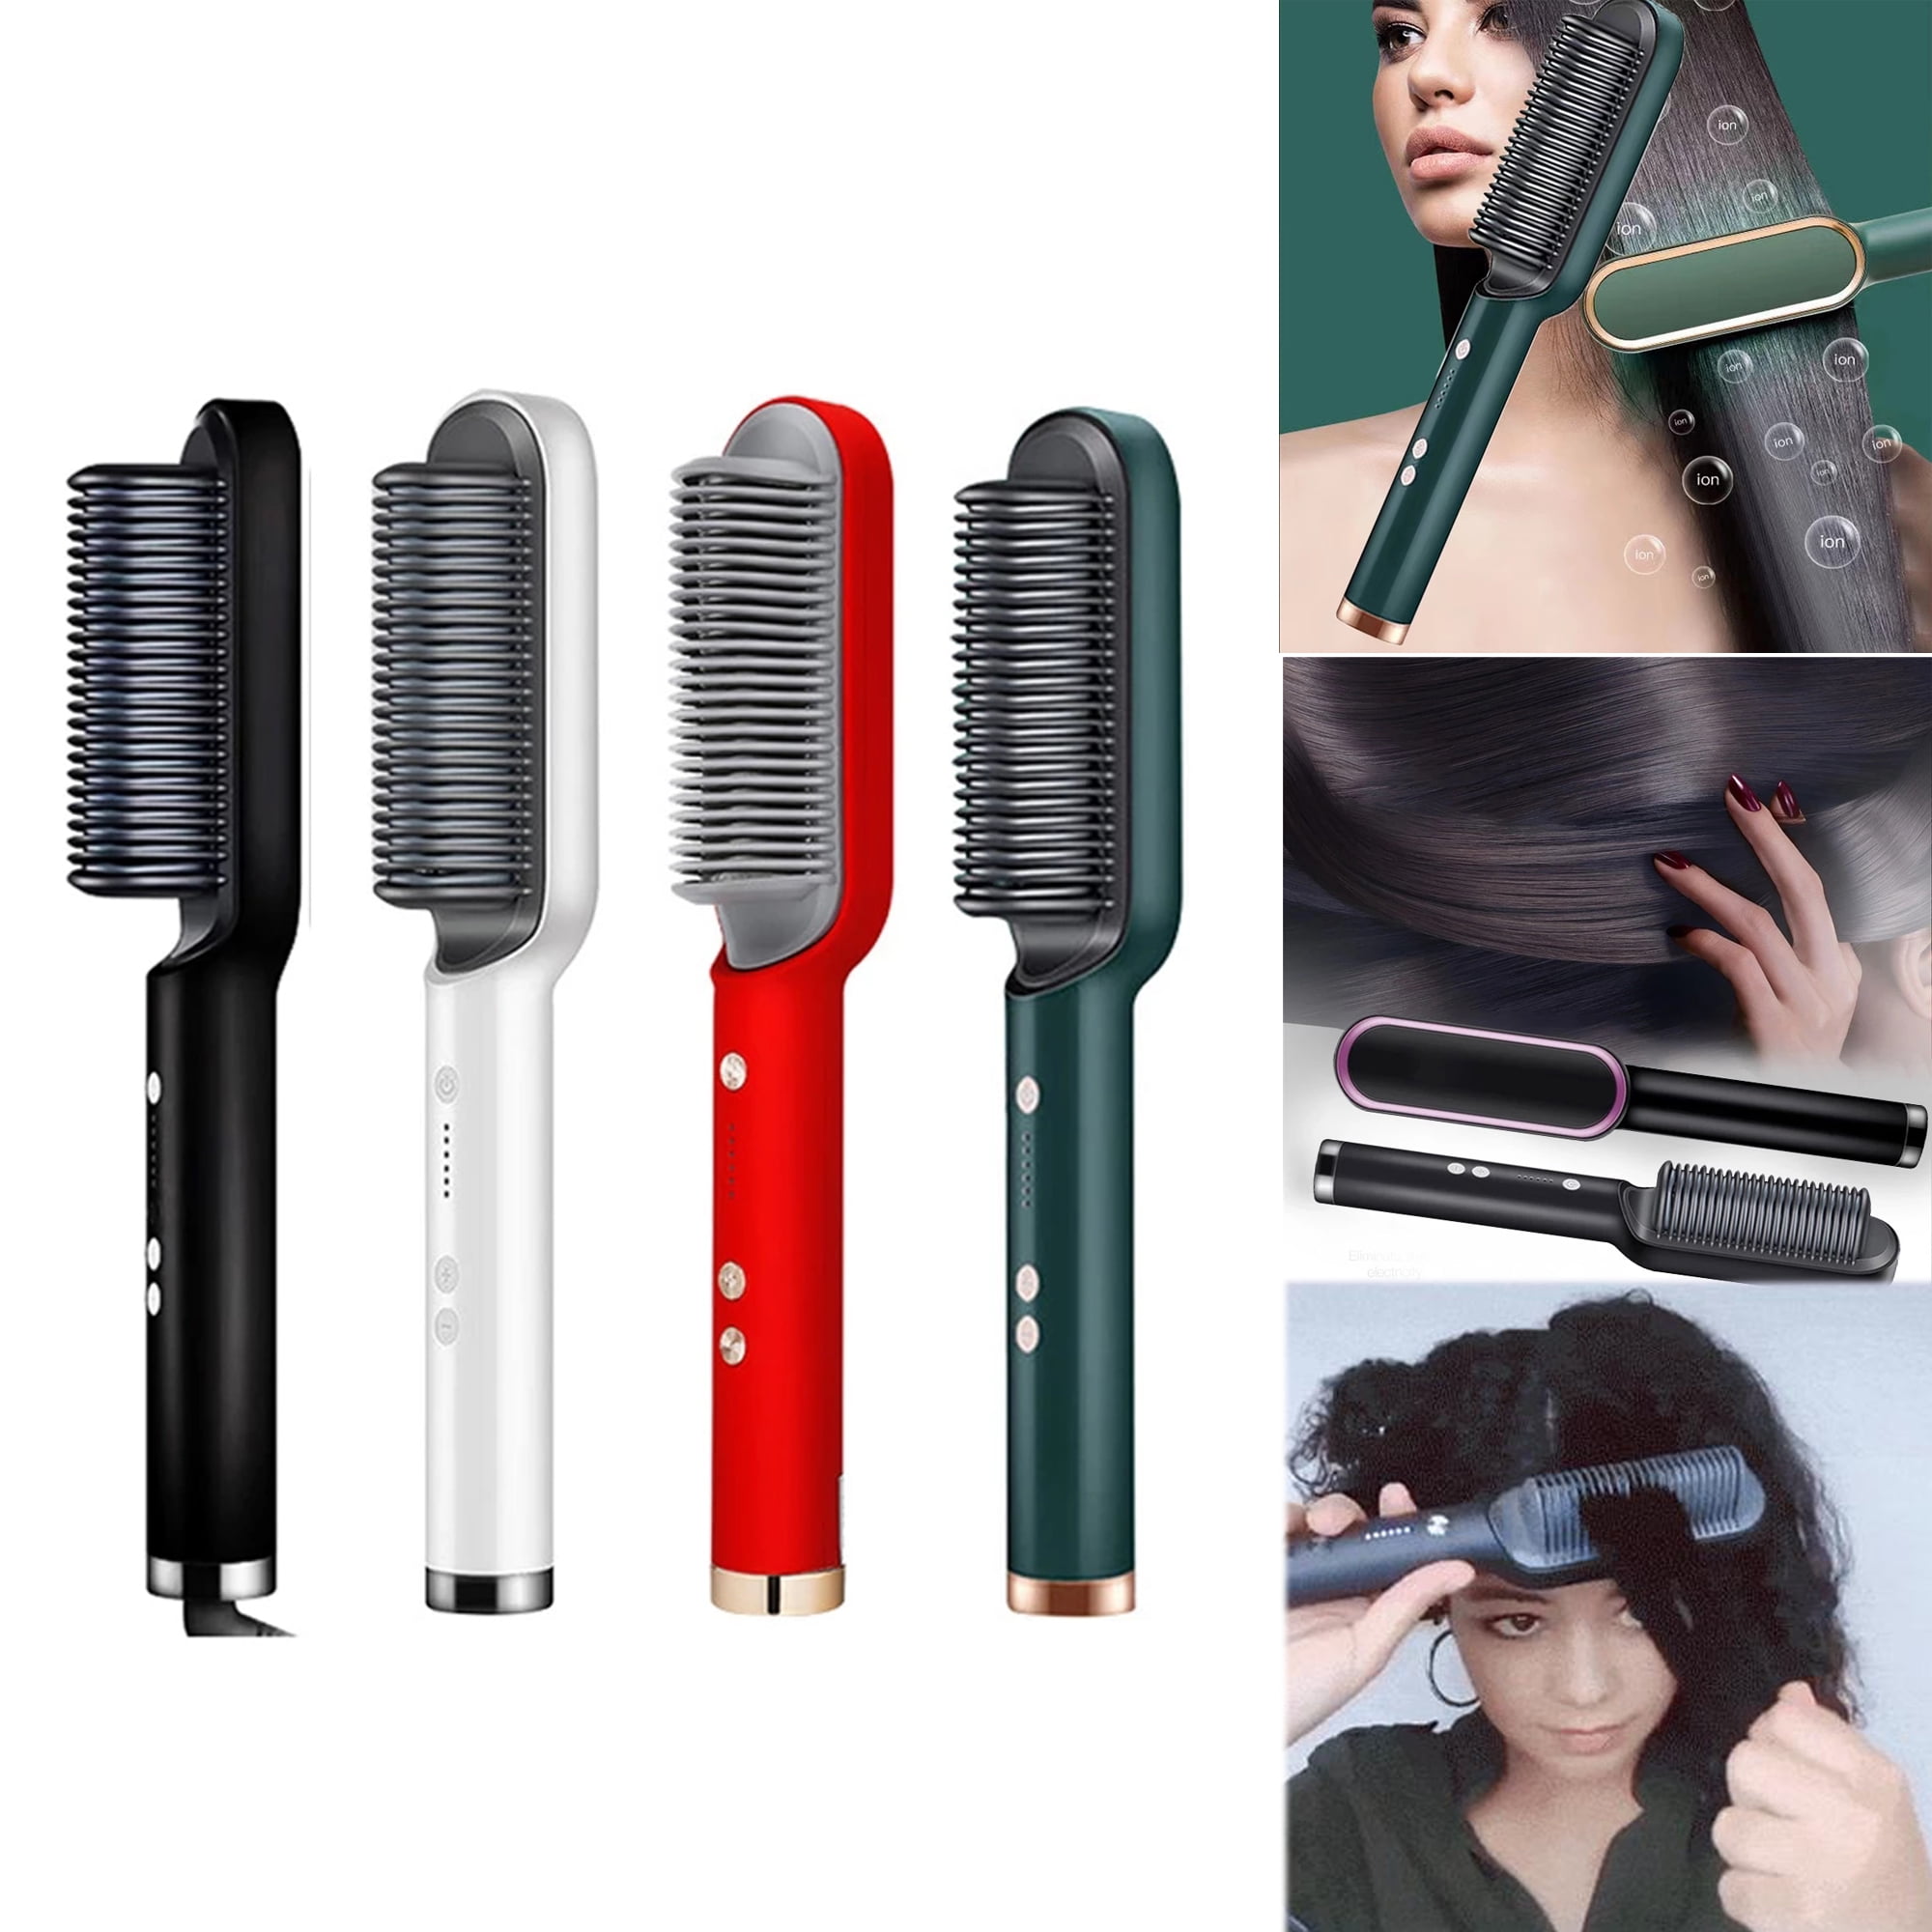 Hair Straightening Comb Fast Heating Ionic Technology 5 Heat Settings Hair  Straightener Hot Brush